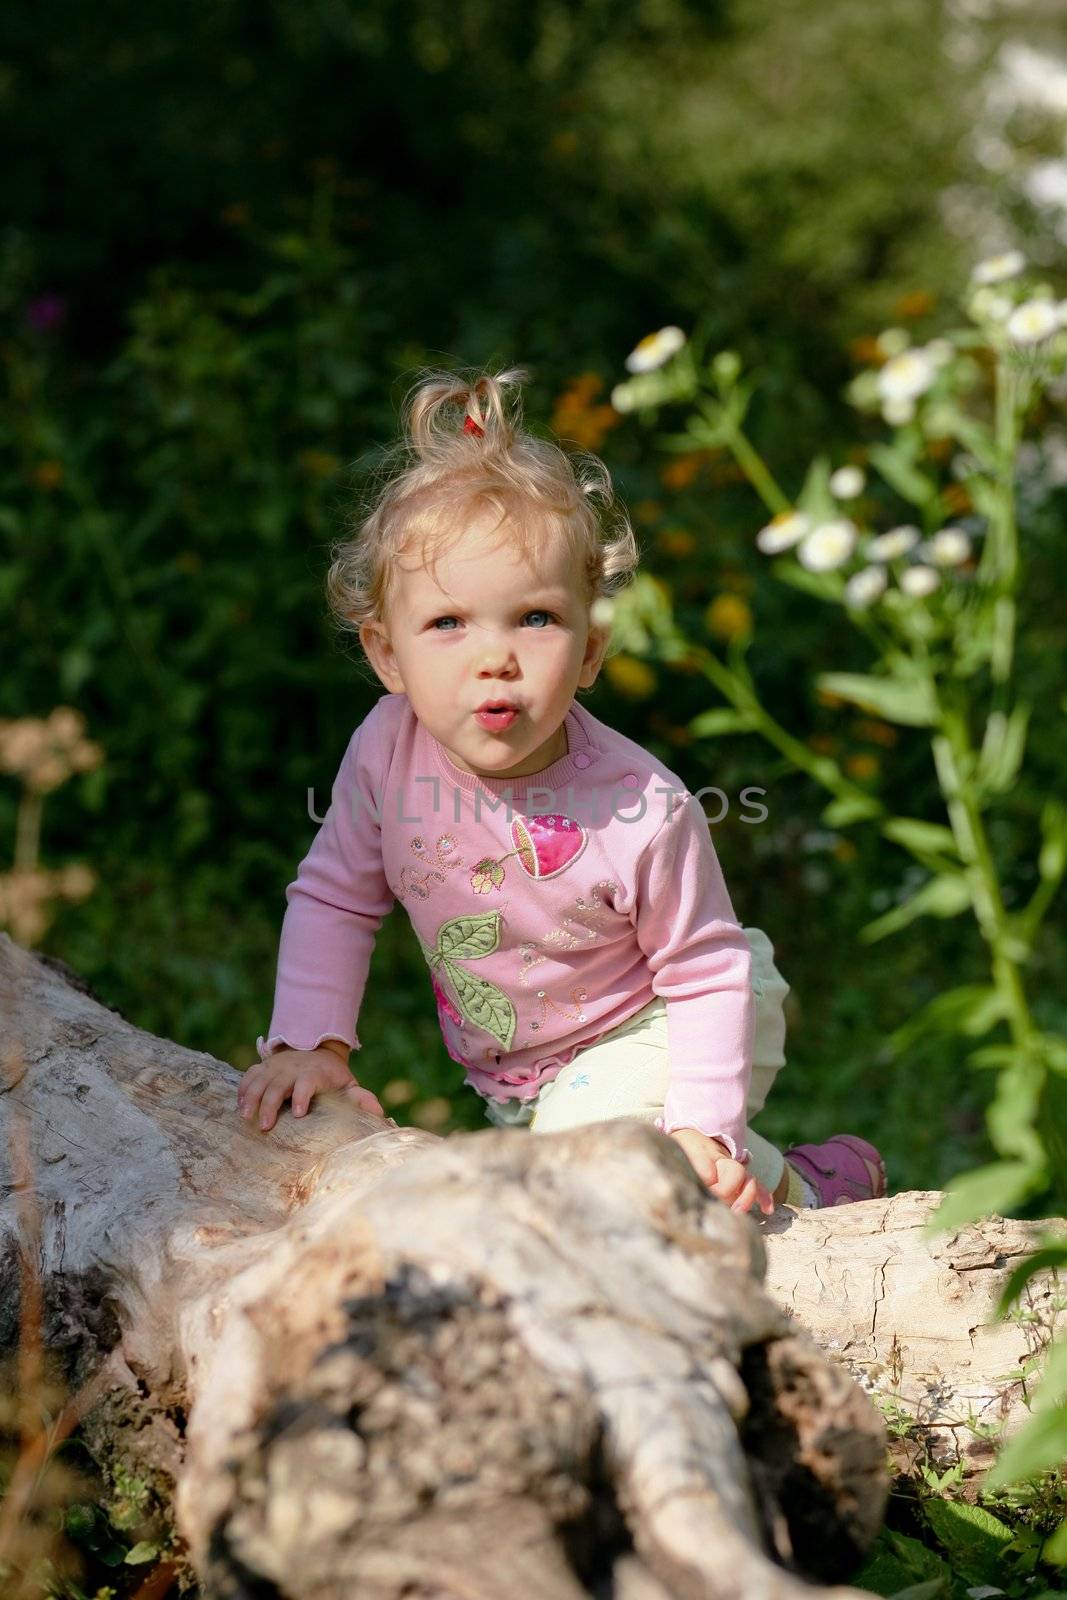 Baby-girl outdoors by velkol